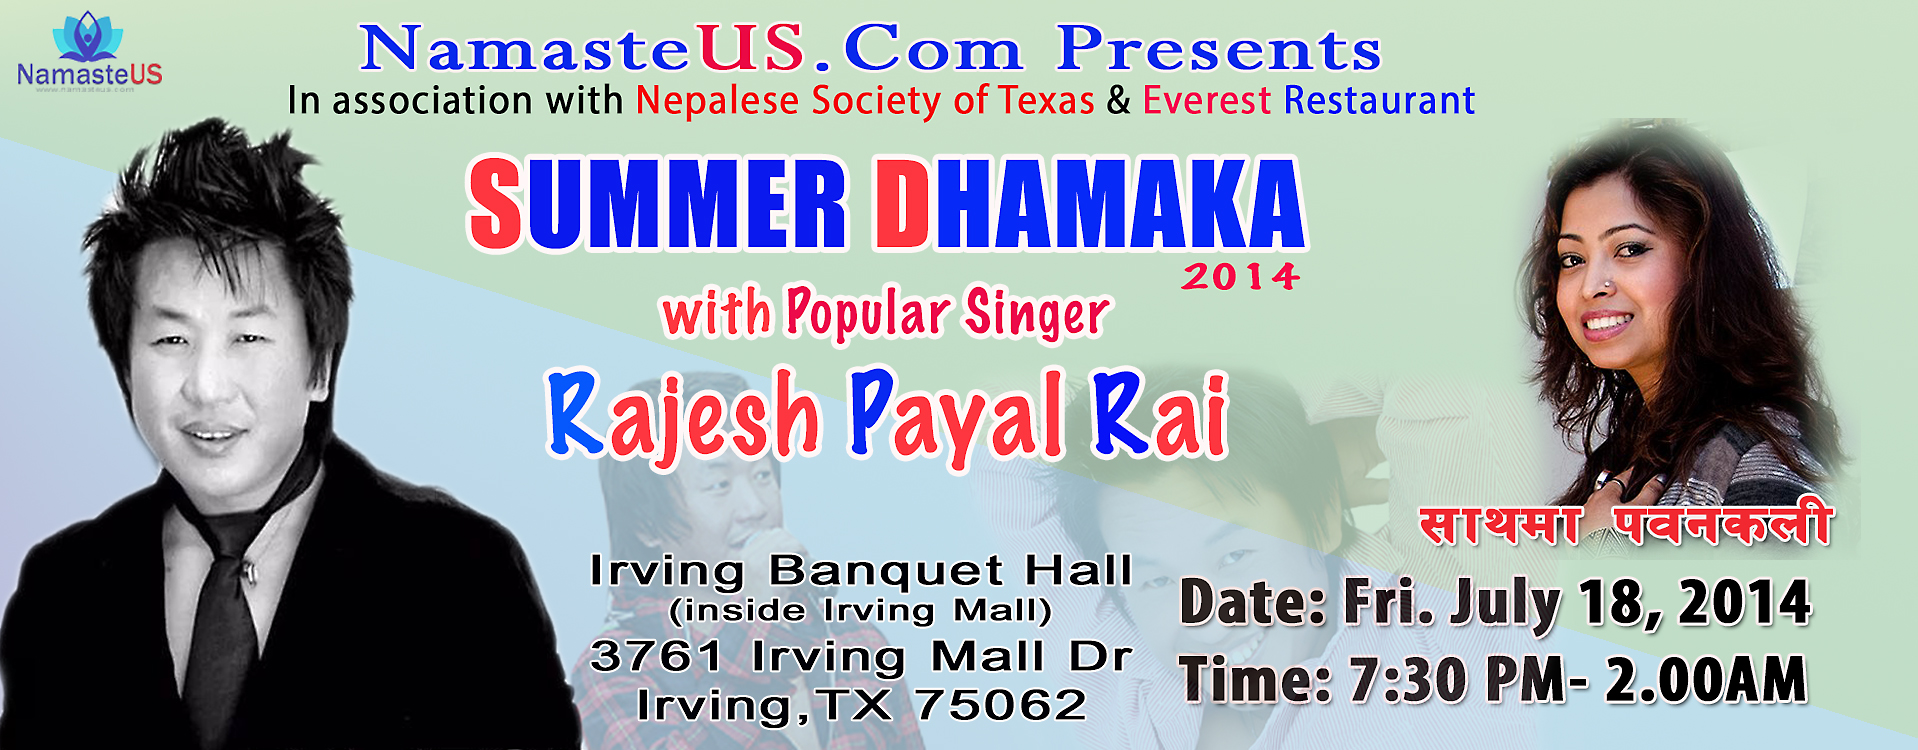 Summer Dhamaka 2014